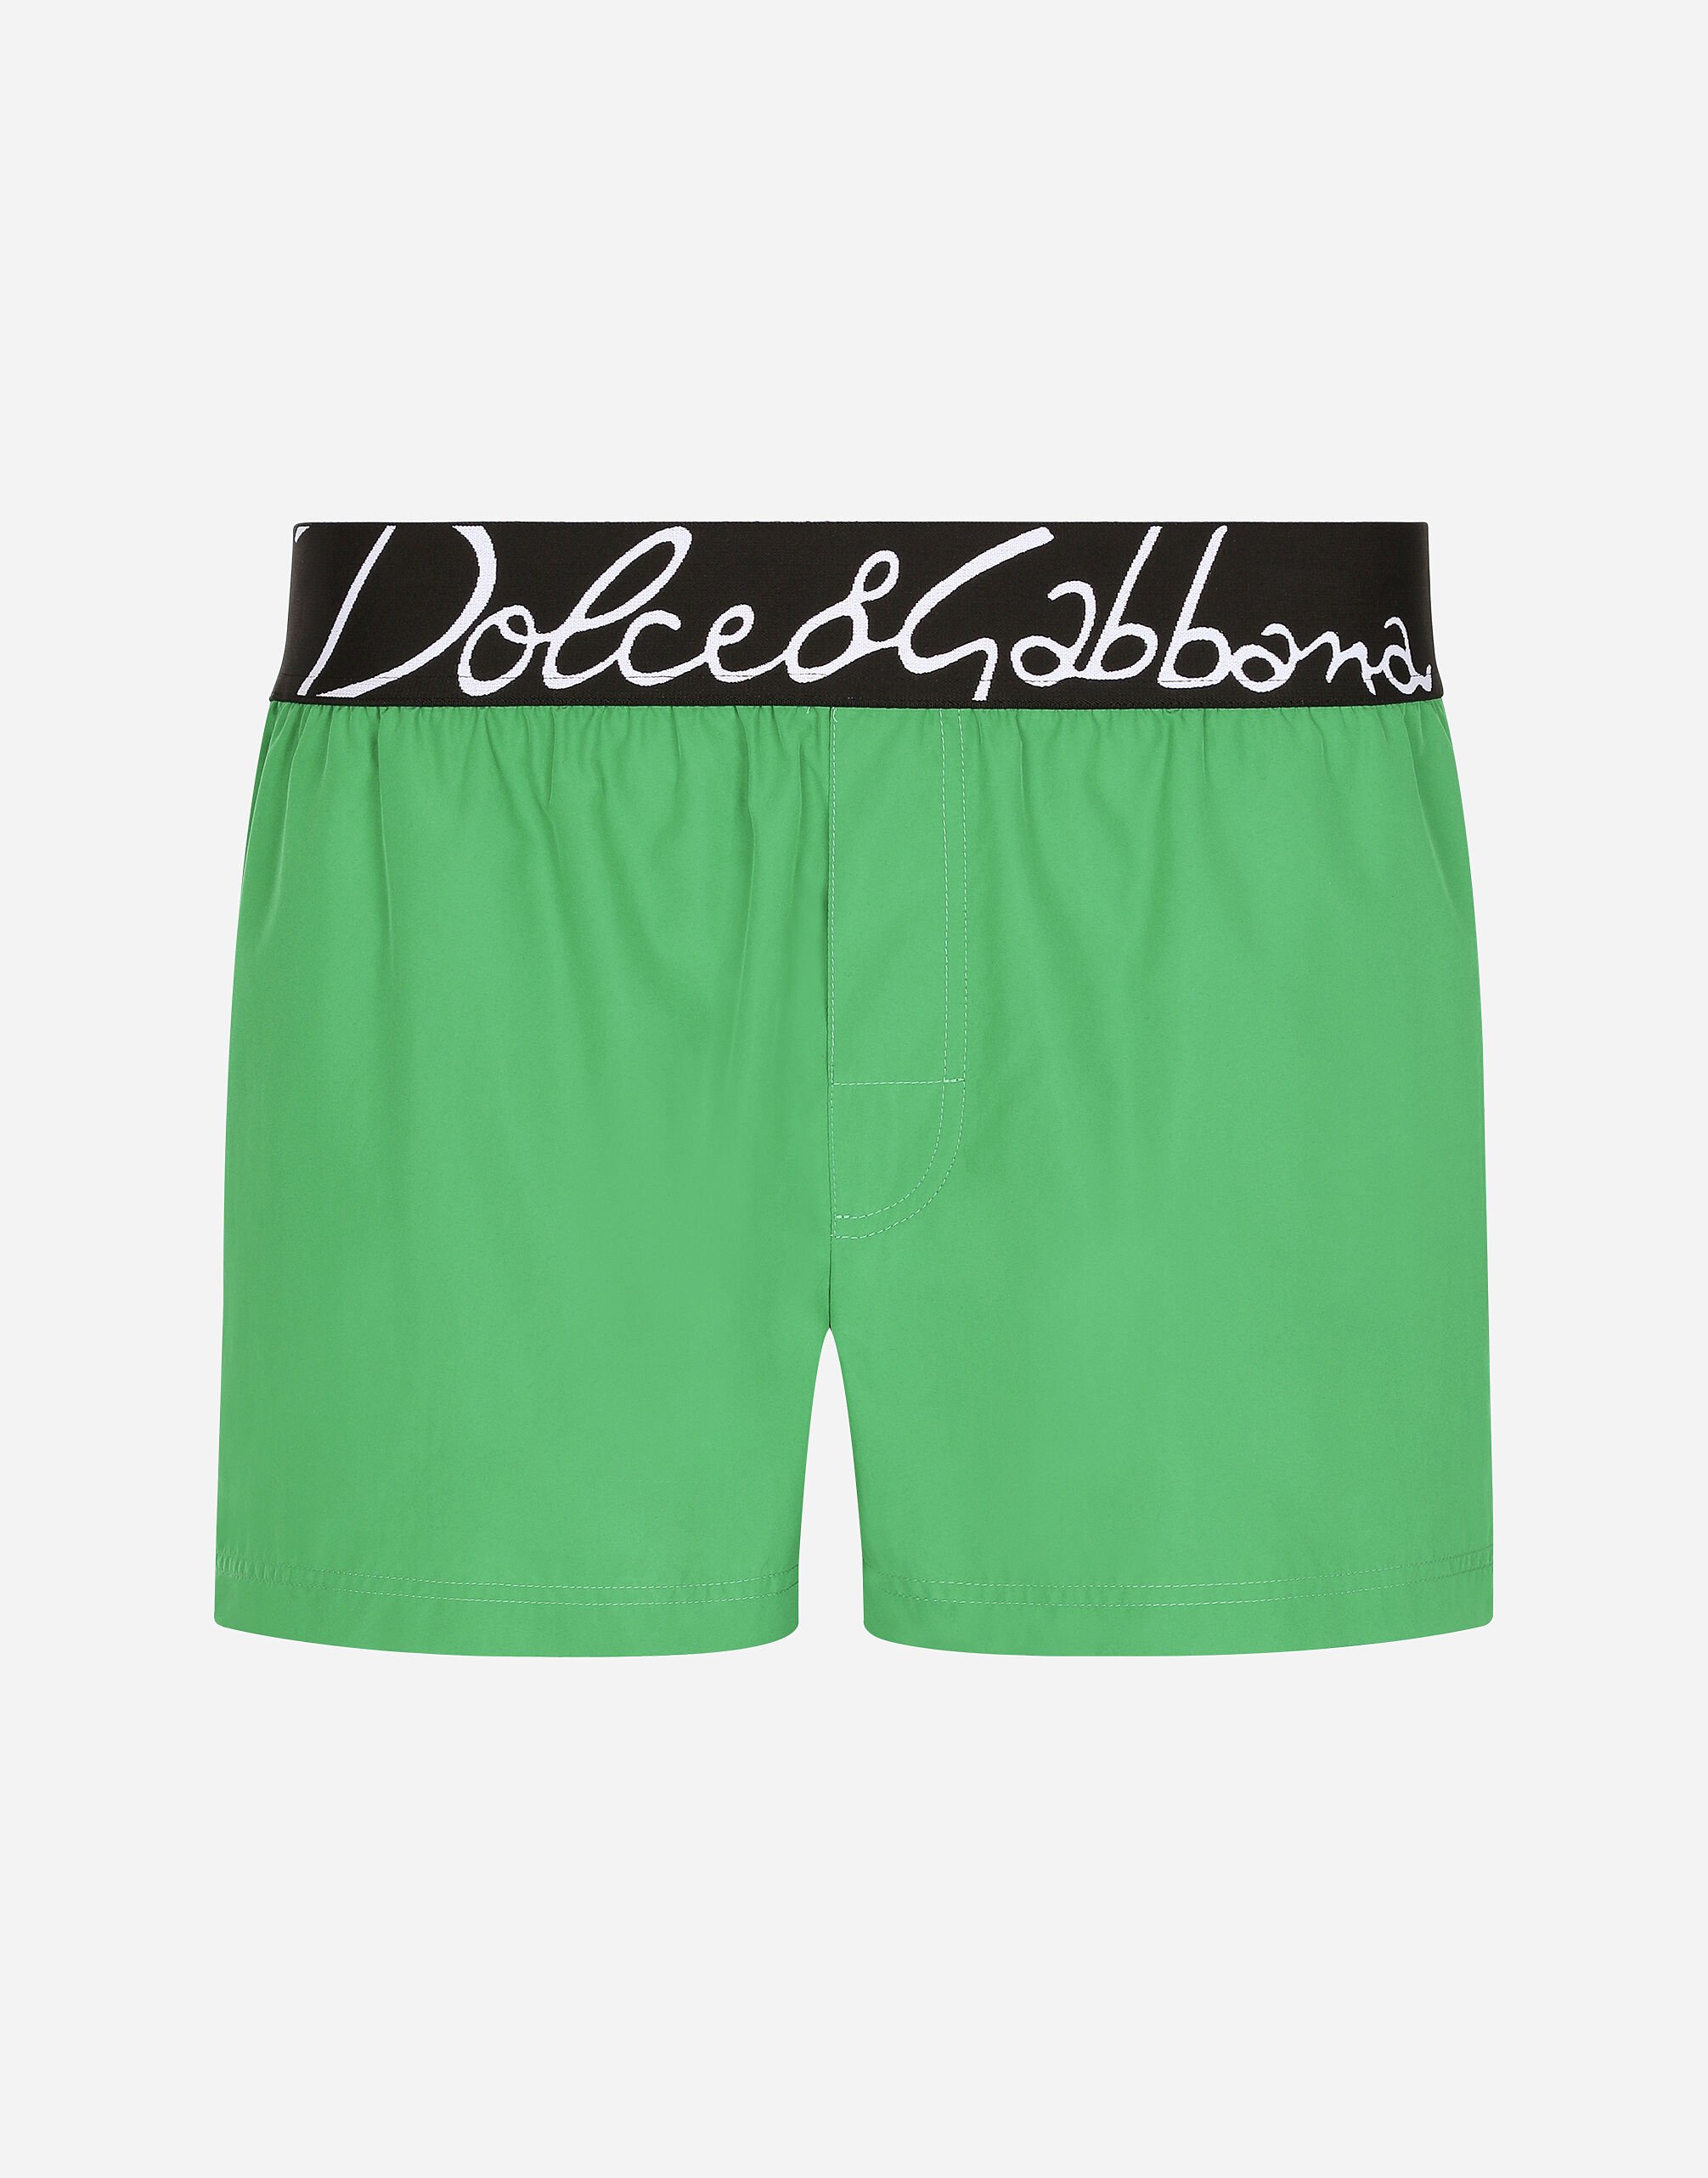 Dolce & Gabbana Short swim trunks with Dolce&Gabbana logo Green havana VG442AVP58E